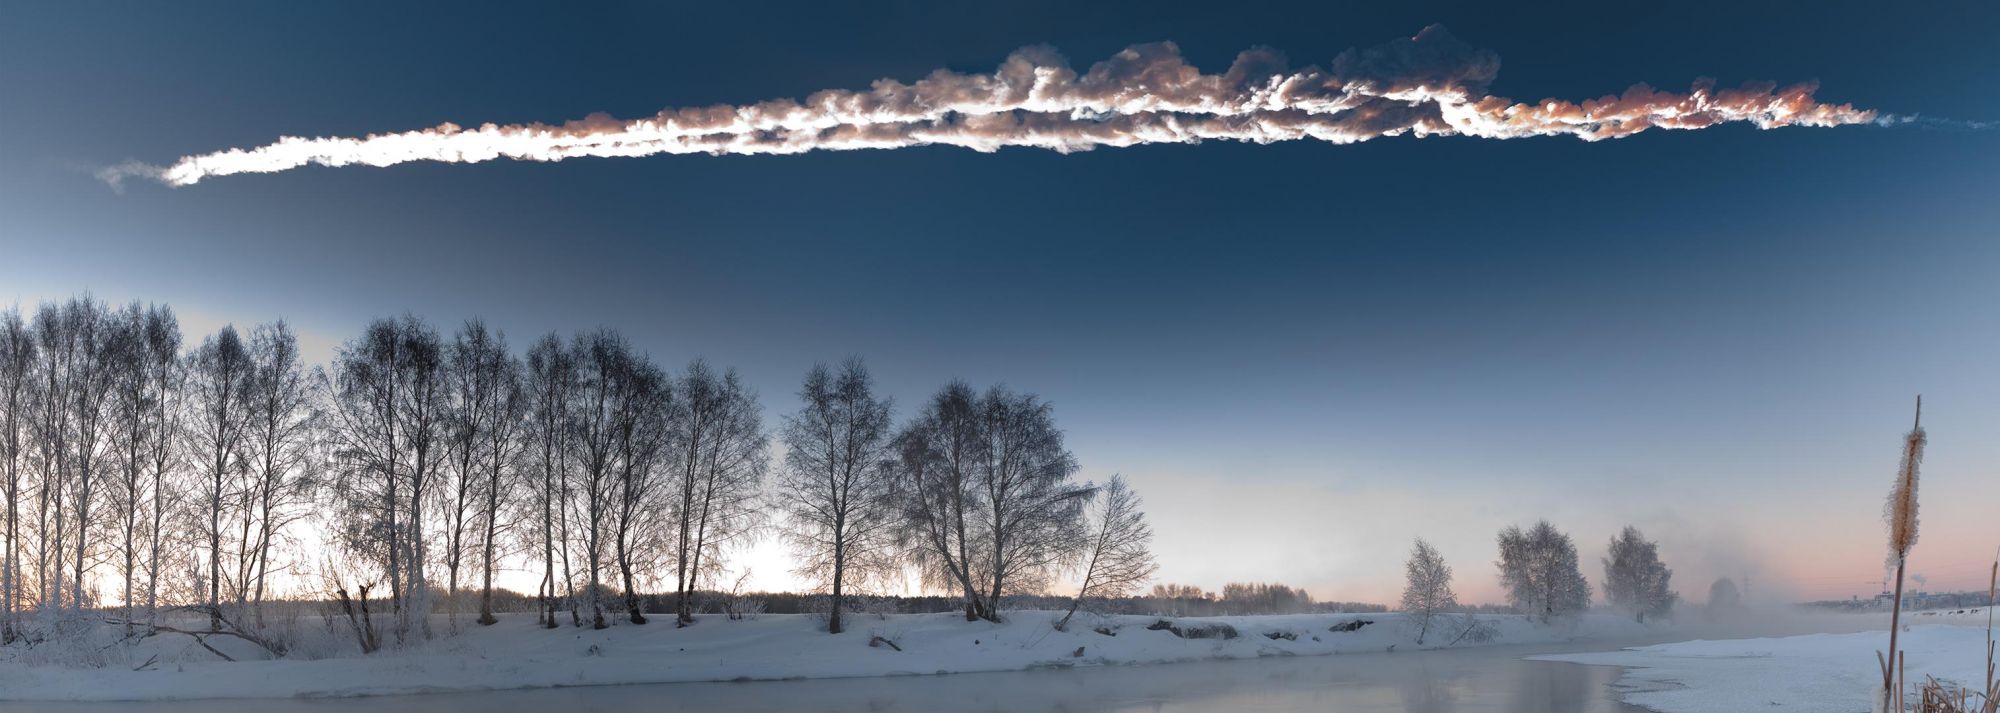 La traînée laissée par la météorite de Tcheliabinsk dans le ciel de Russie. © M. Ahmetvaleev